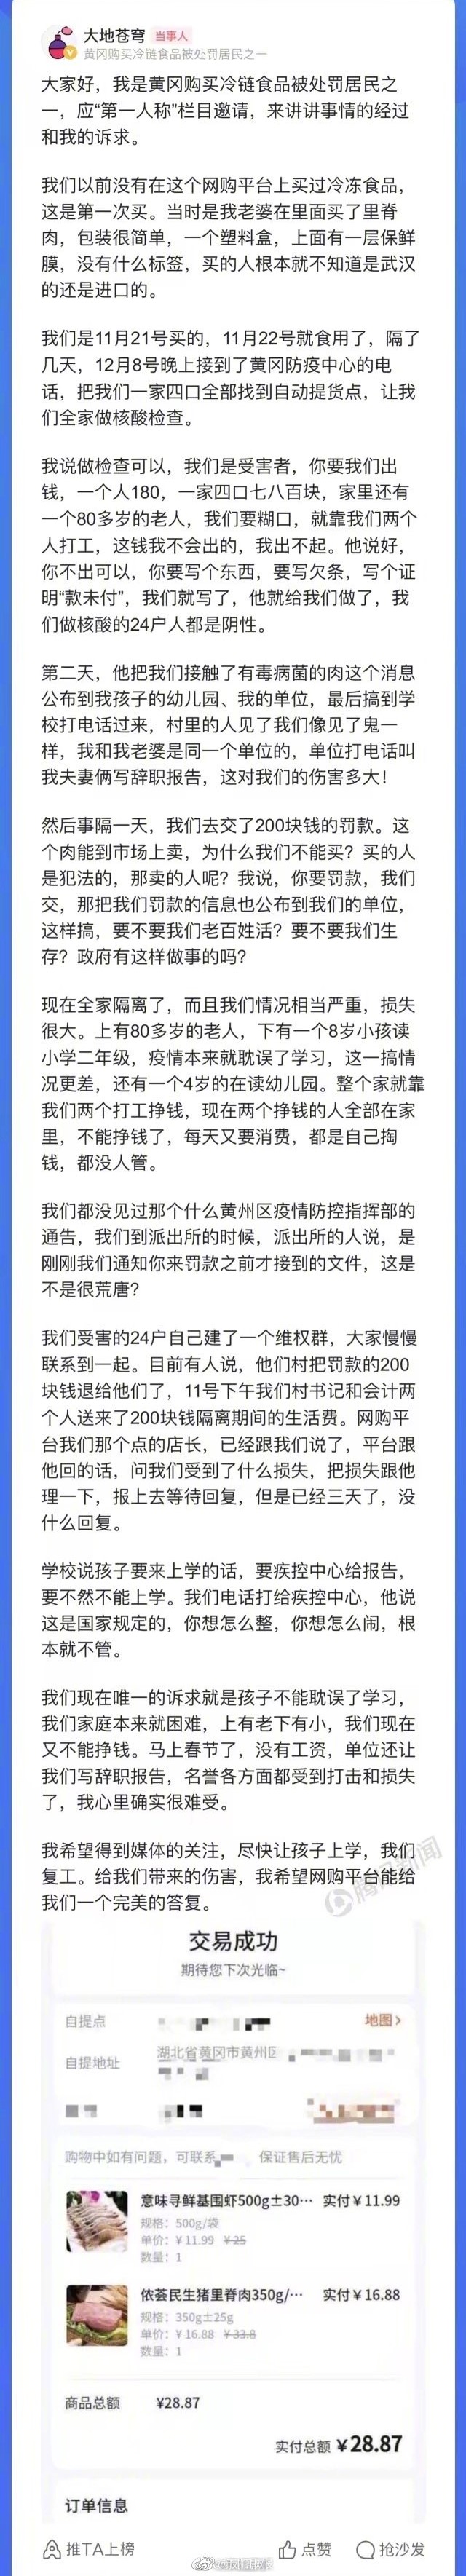 黄冈24户居民网购冷冻猪肉被罚 居民：不知是进口，被单位要求辞职